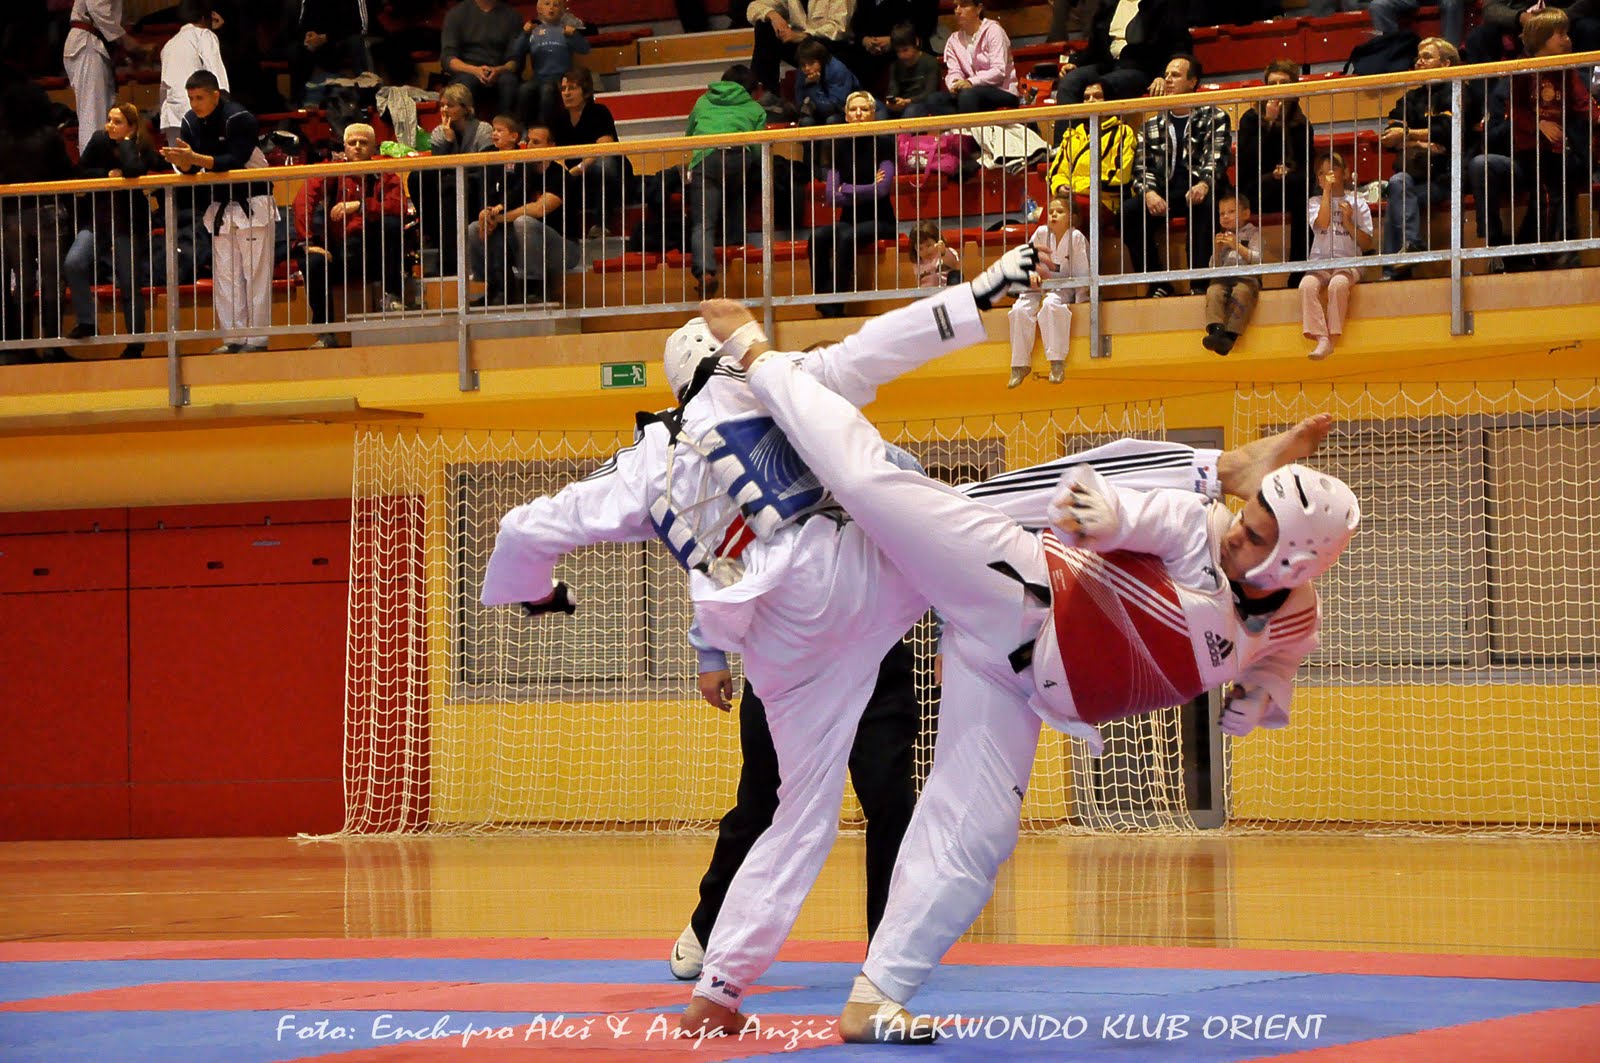 Taekwondo Combat: Taekwondo combat style